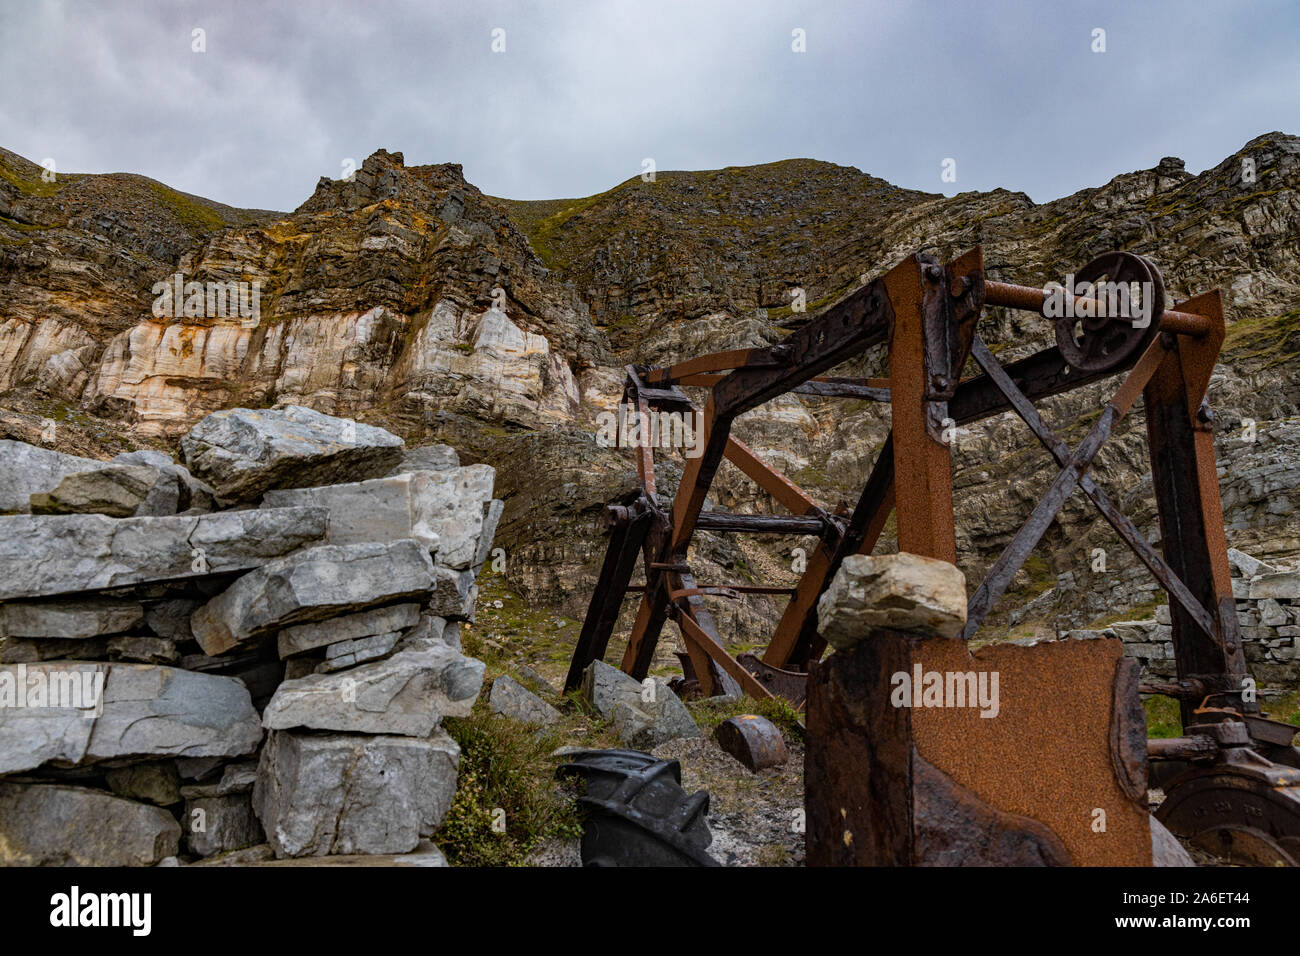 Rusty old mines et carrières équipement sur la montagne Muckish, comté de Donegal, Irlande Banque D'Images